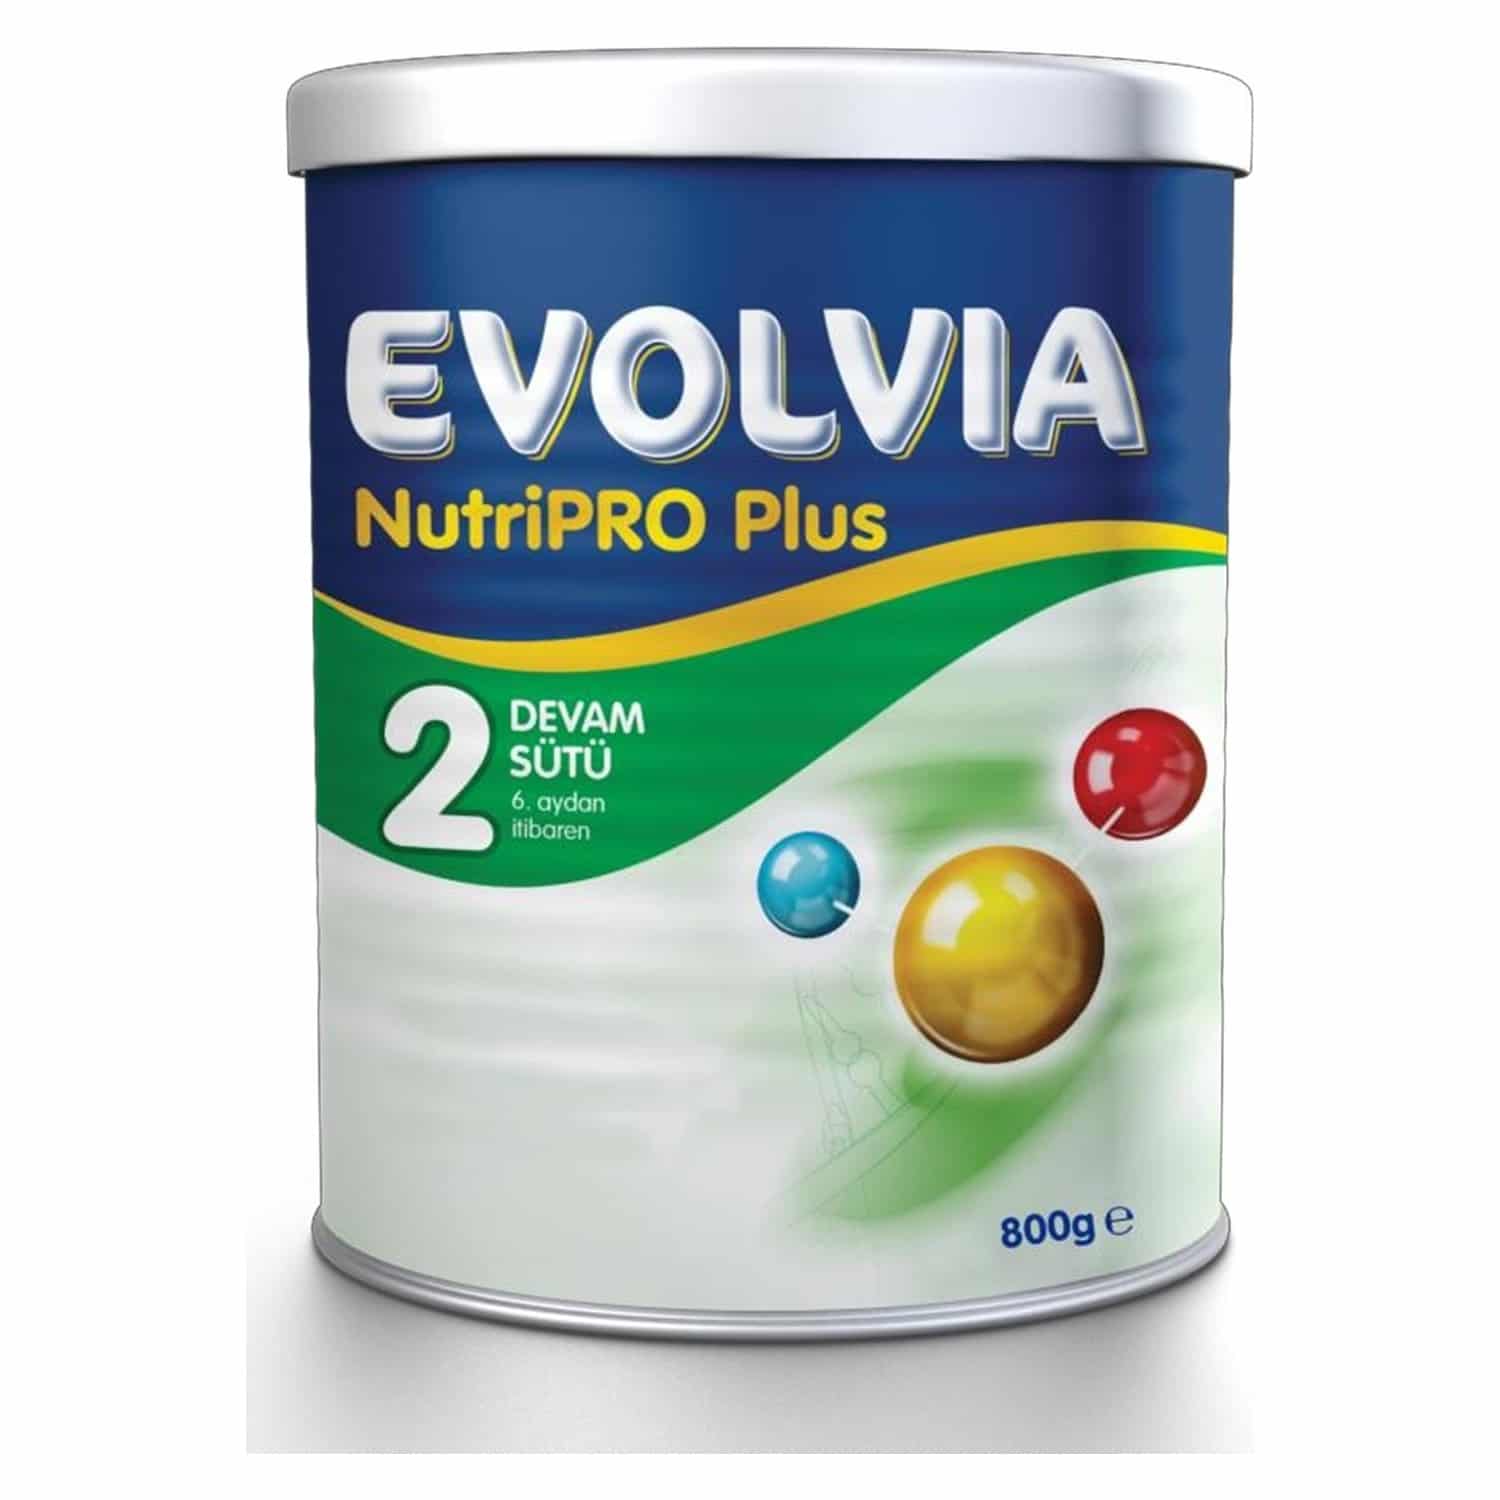 Evolvia NutriPRO Plus Devam Sütü ürün resmi